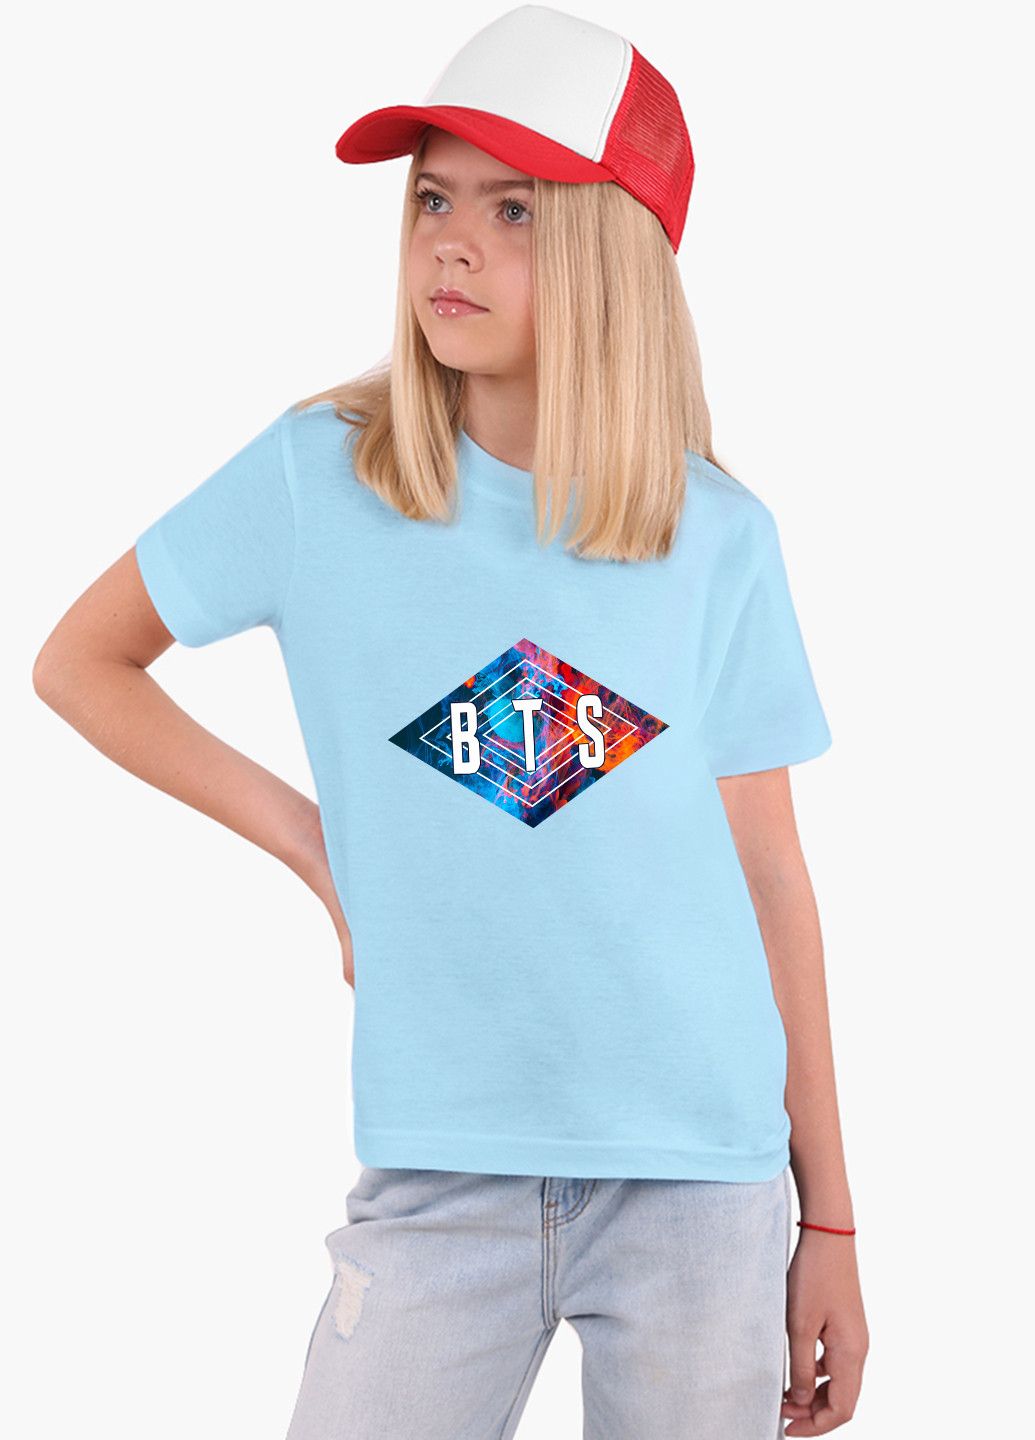 Голубая демисезонная футболка детская бтс (bts)(9224-1062) MobiPrint